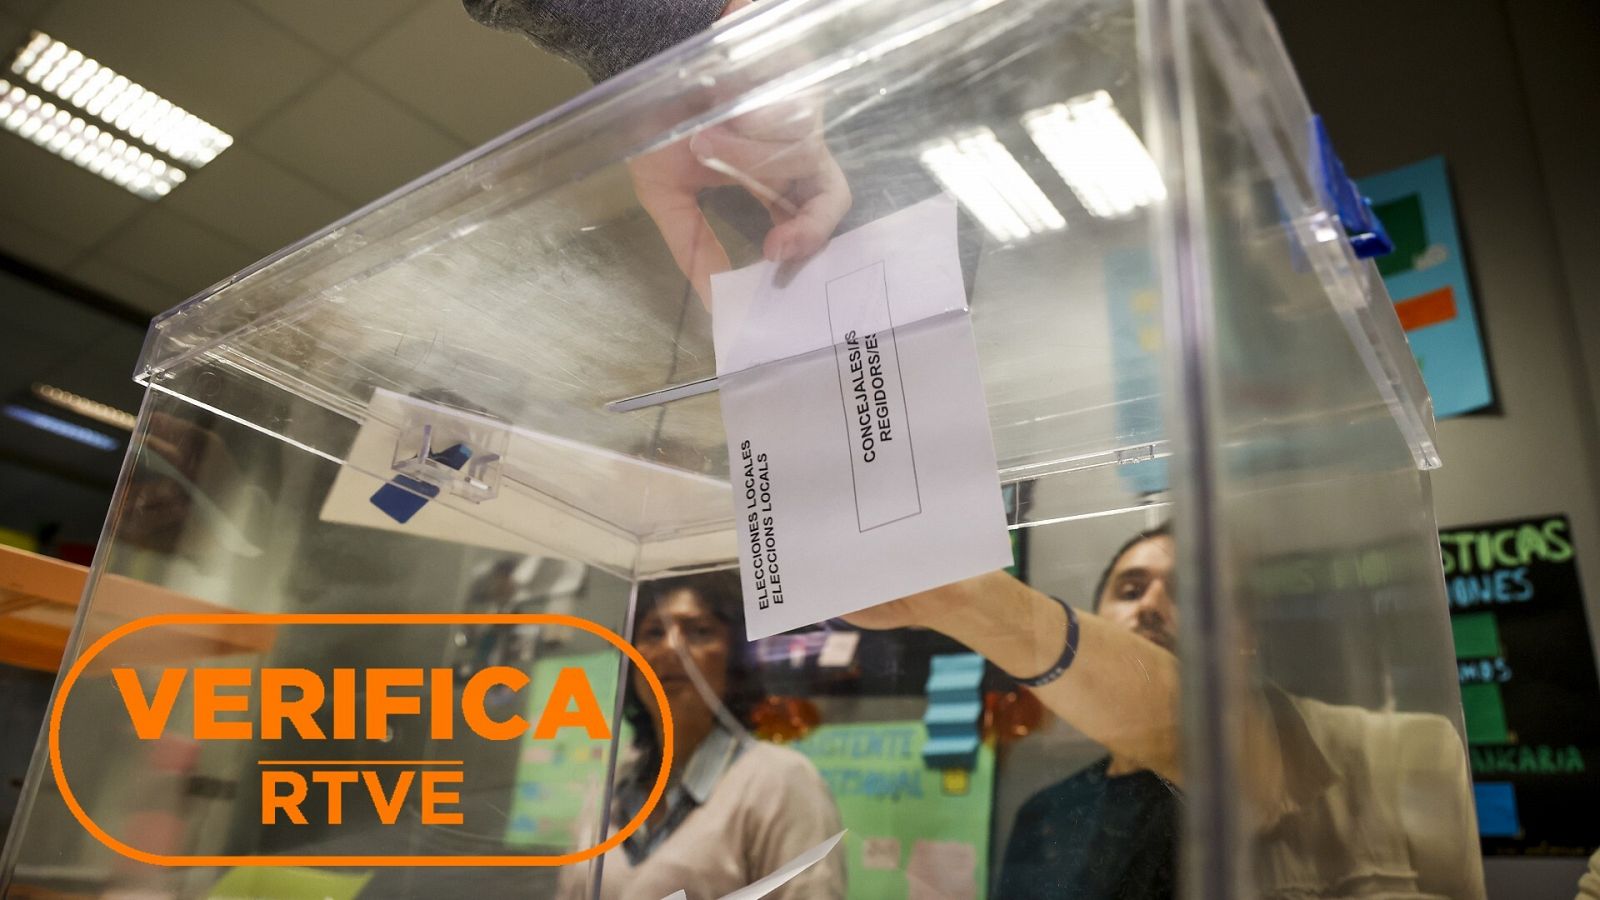 Imagen de Europa Press de las elecciones municipales 28M en València en la que aparece una urna. Con el sello VerificaRTVE en naranja,